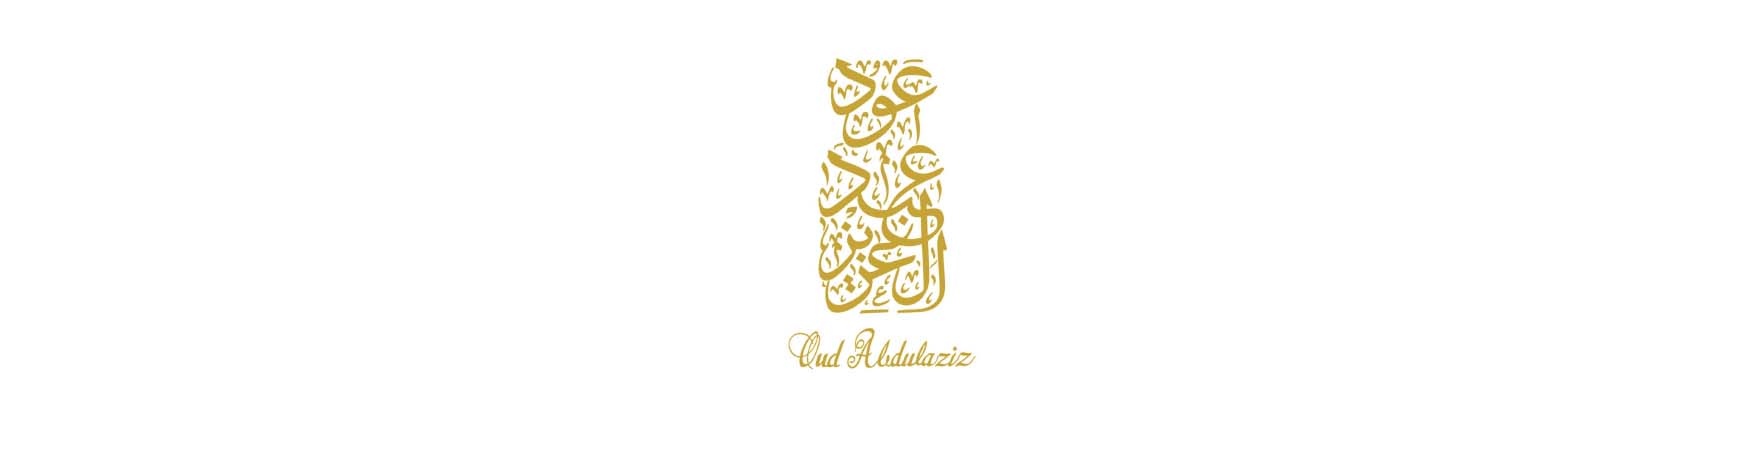 Oud Abdulaziz